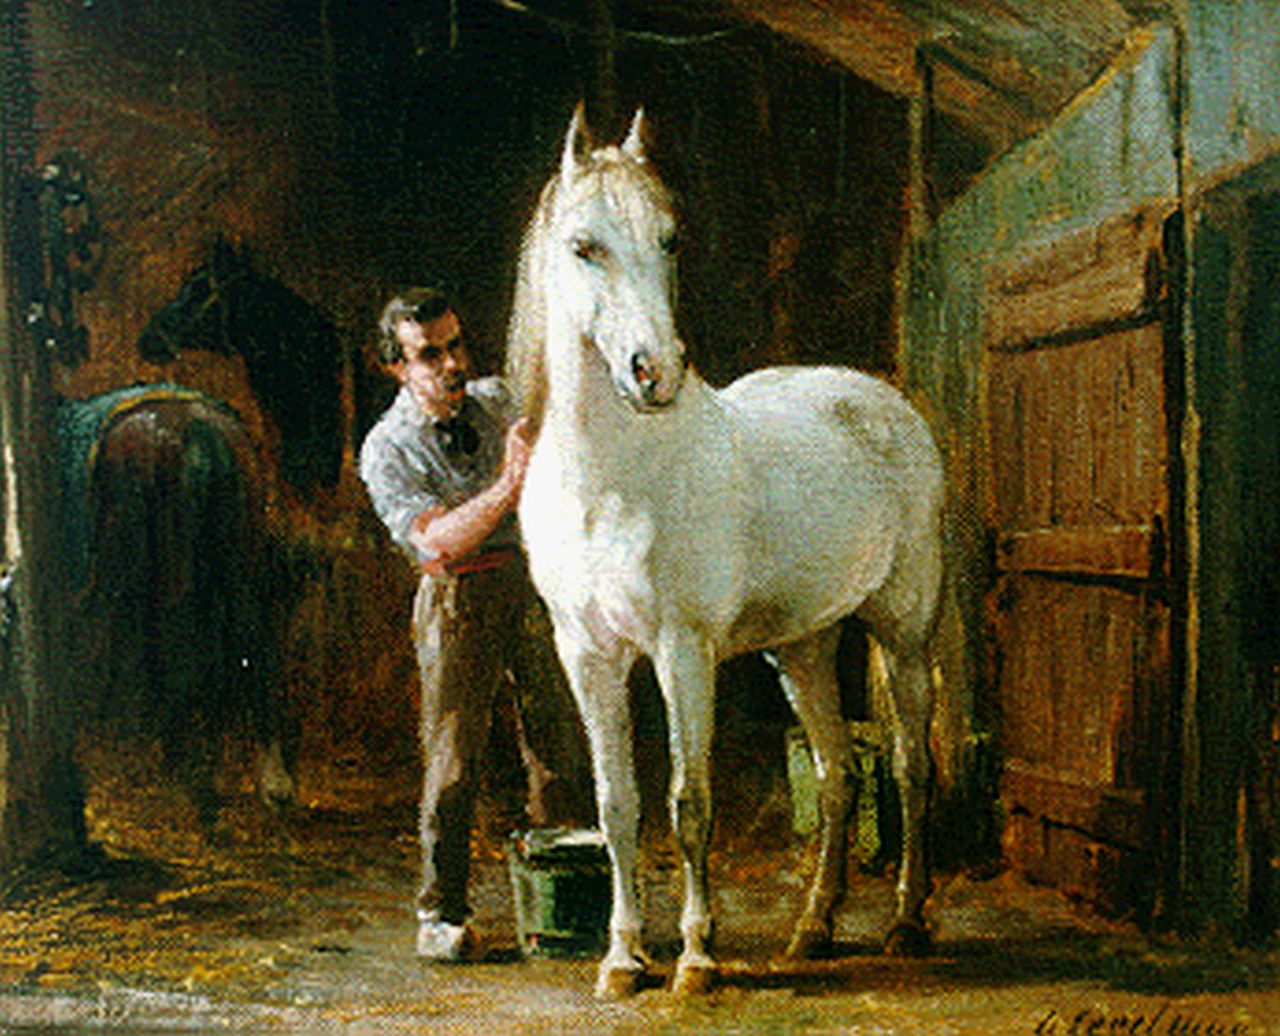 Eerelman O.  | Otto Eerelman, Schimmel met verzorger in de stal, olieverf op doek 24,0 x 29,2 cm, gesigneerd rechtsonder